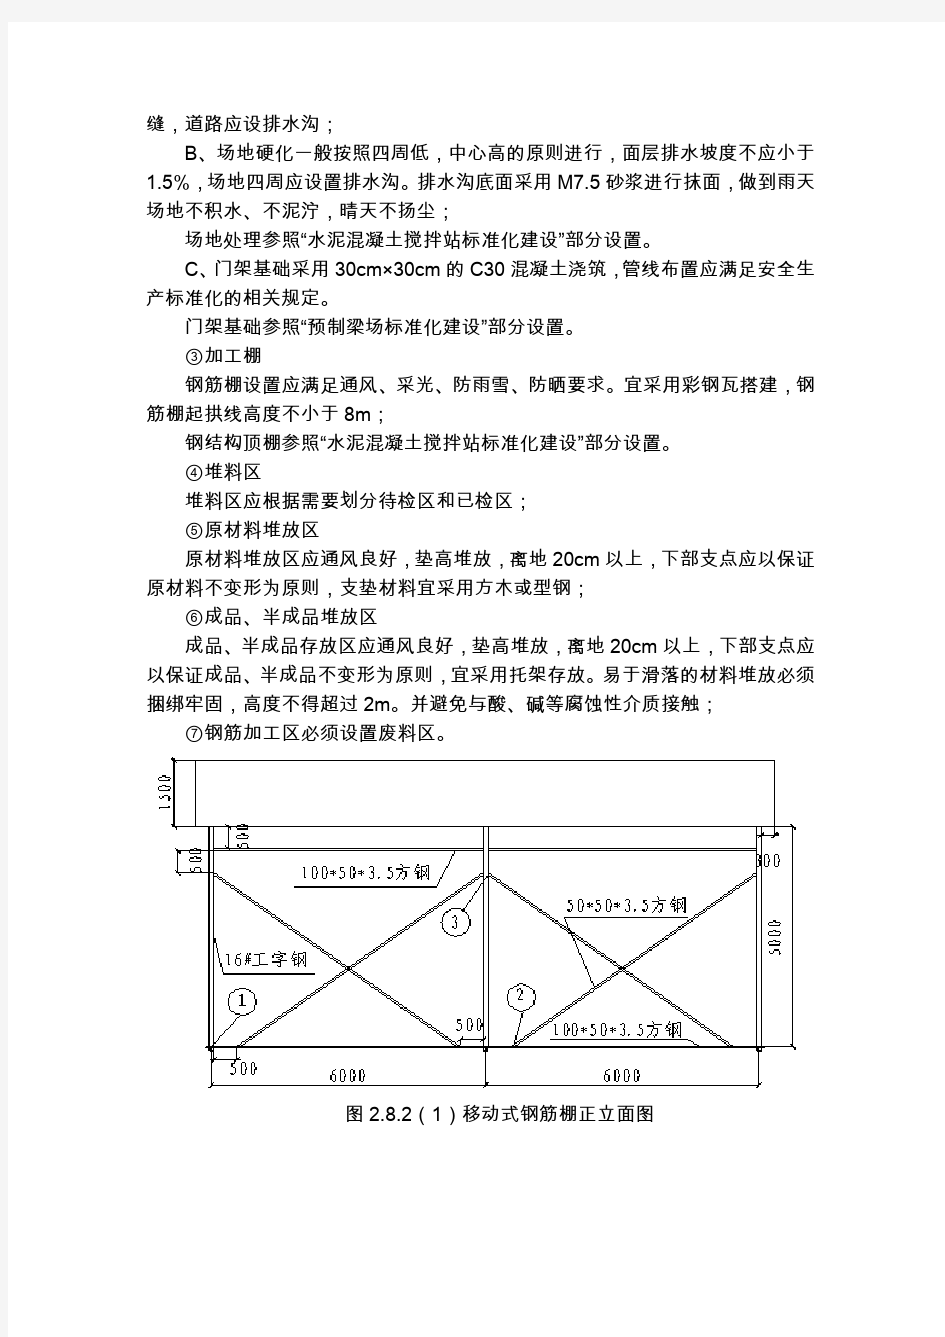 钢筋加工厂标准化建设(2.8)